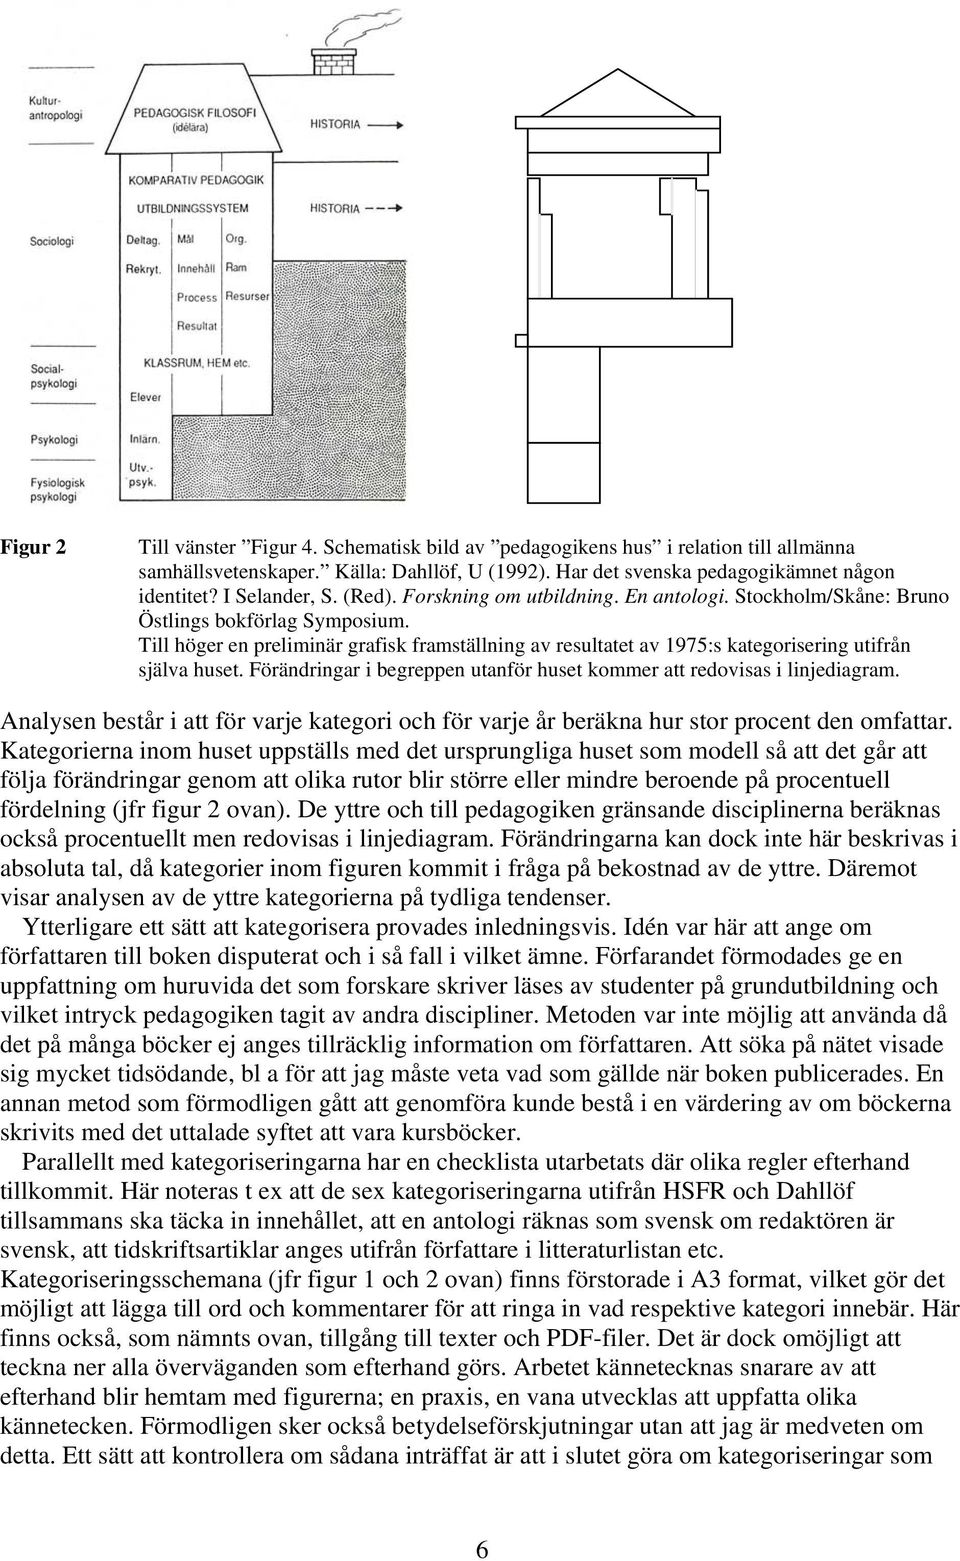 Till höger en preliminär grafisk framställning av resultatet av 1975:s kategorisering utifrån själva huset. Förändringar i begreppen utanför huset kommer att redovisas i linjediagram.